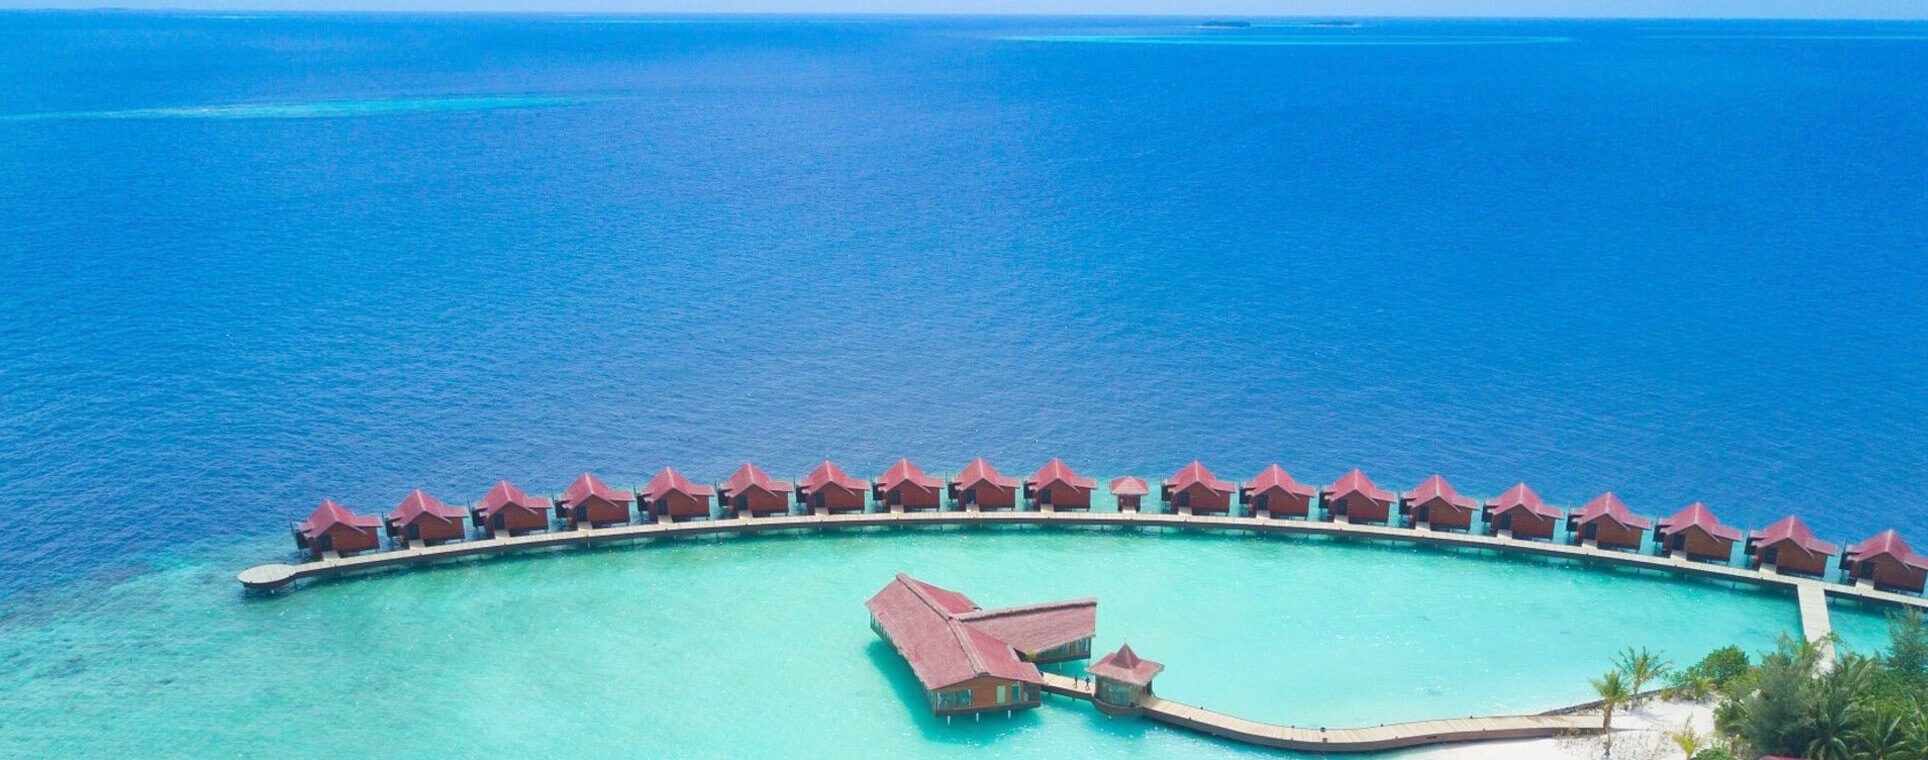 Maldives Tourist Attractions